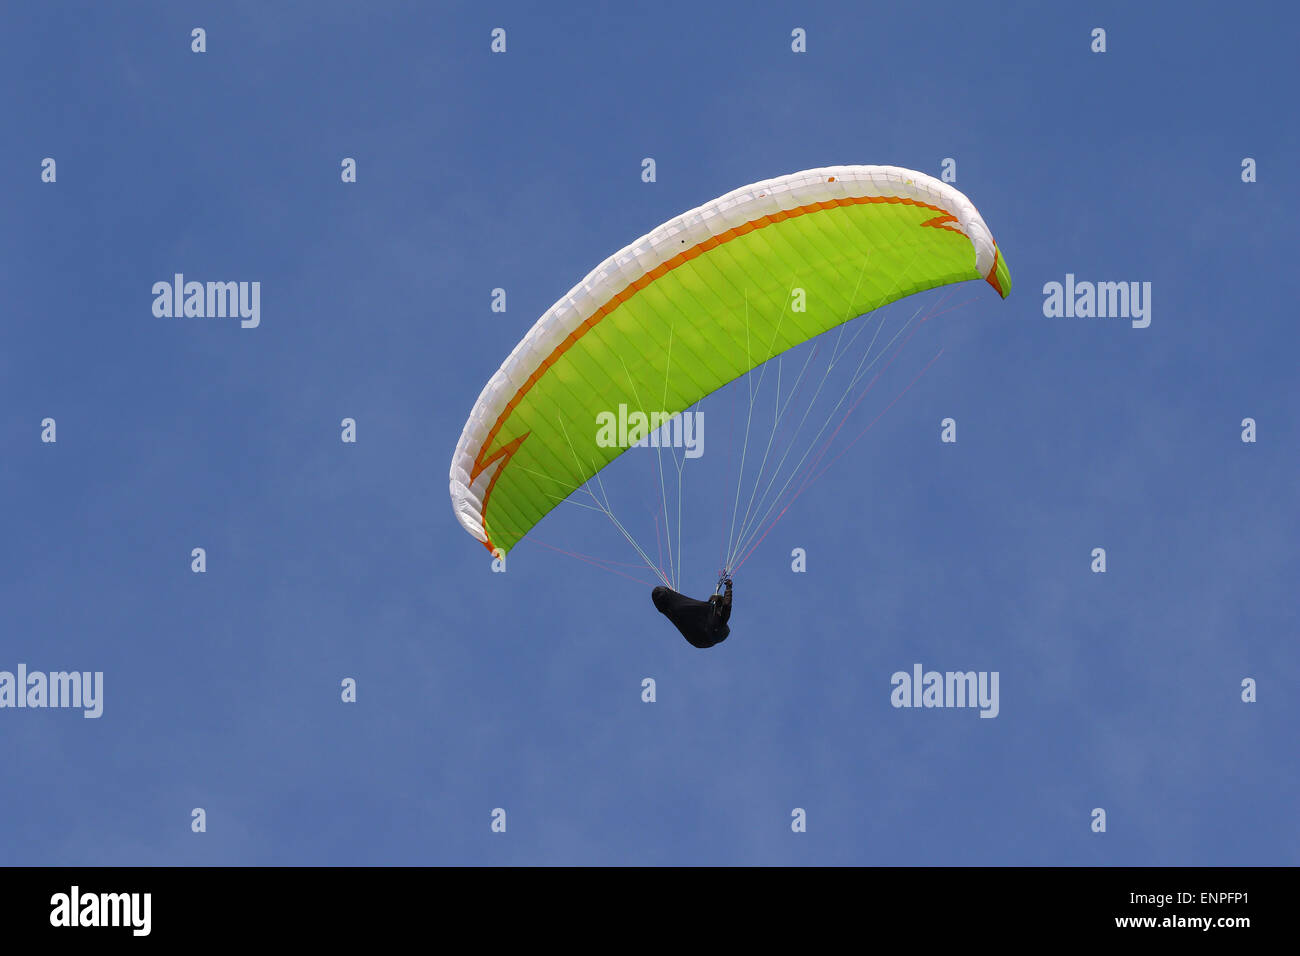 Colore Lime parachute in alto nel cielo Foto Stock